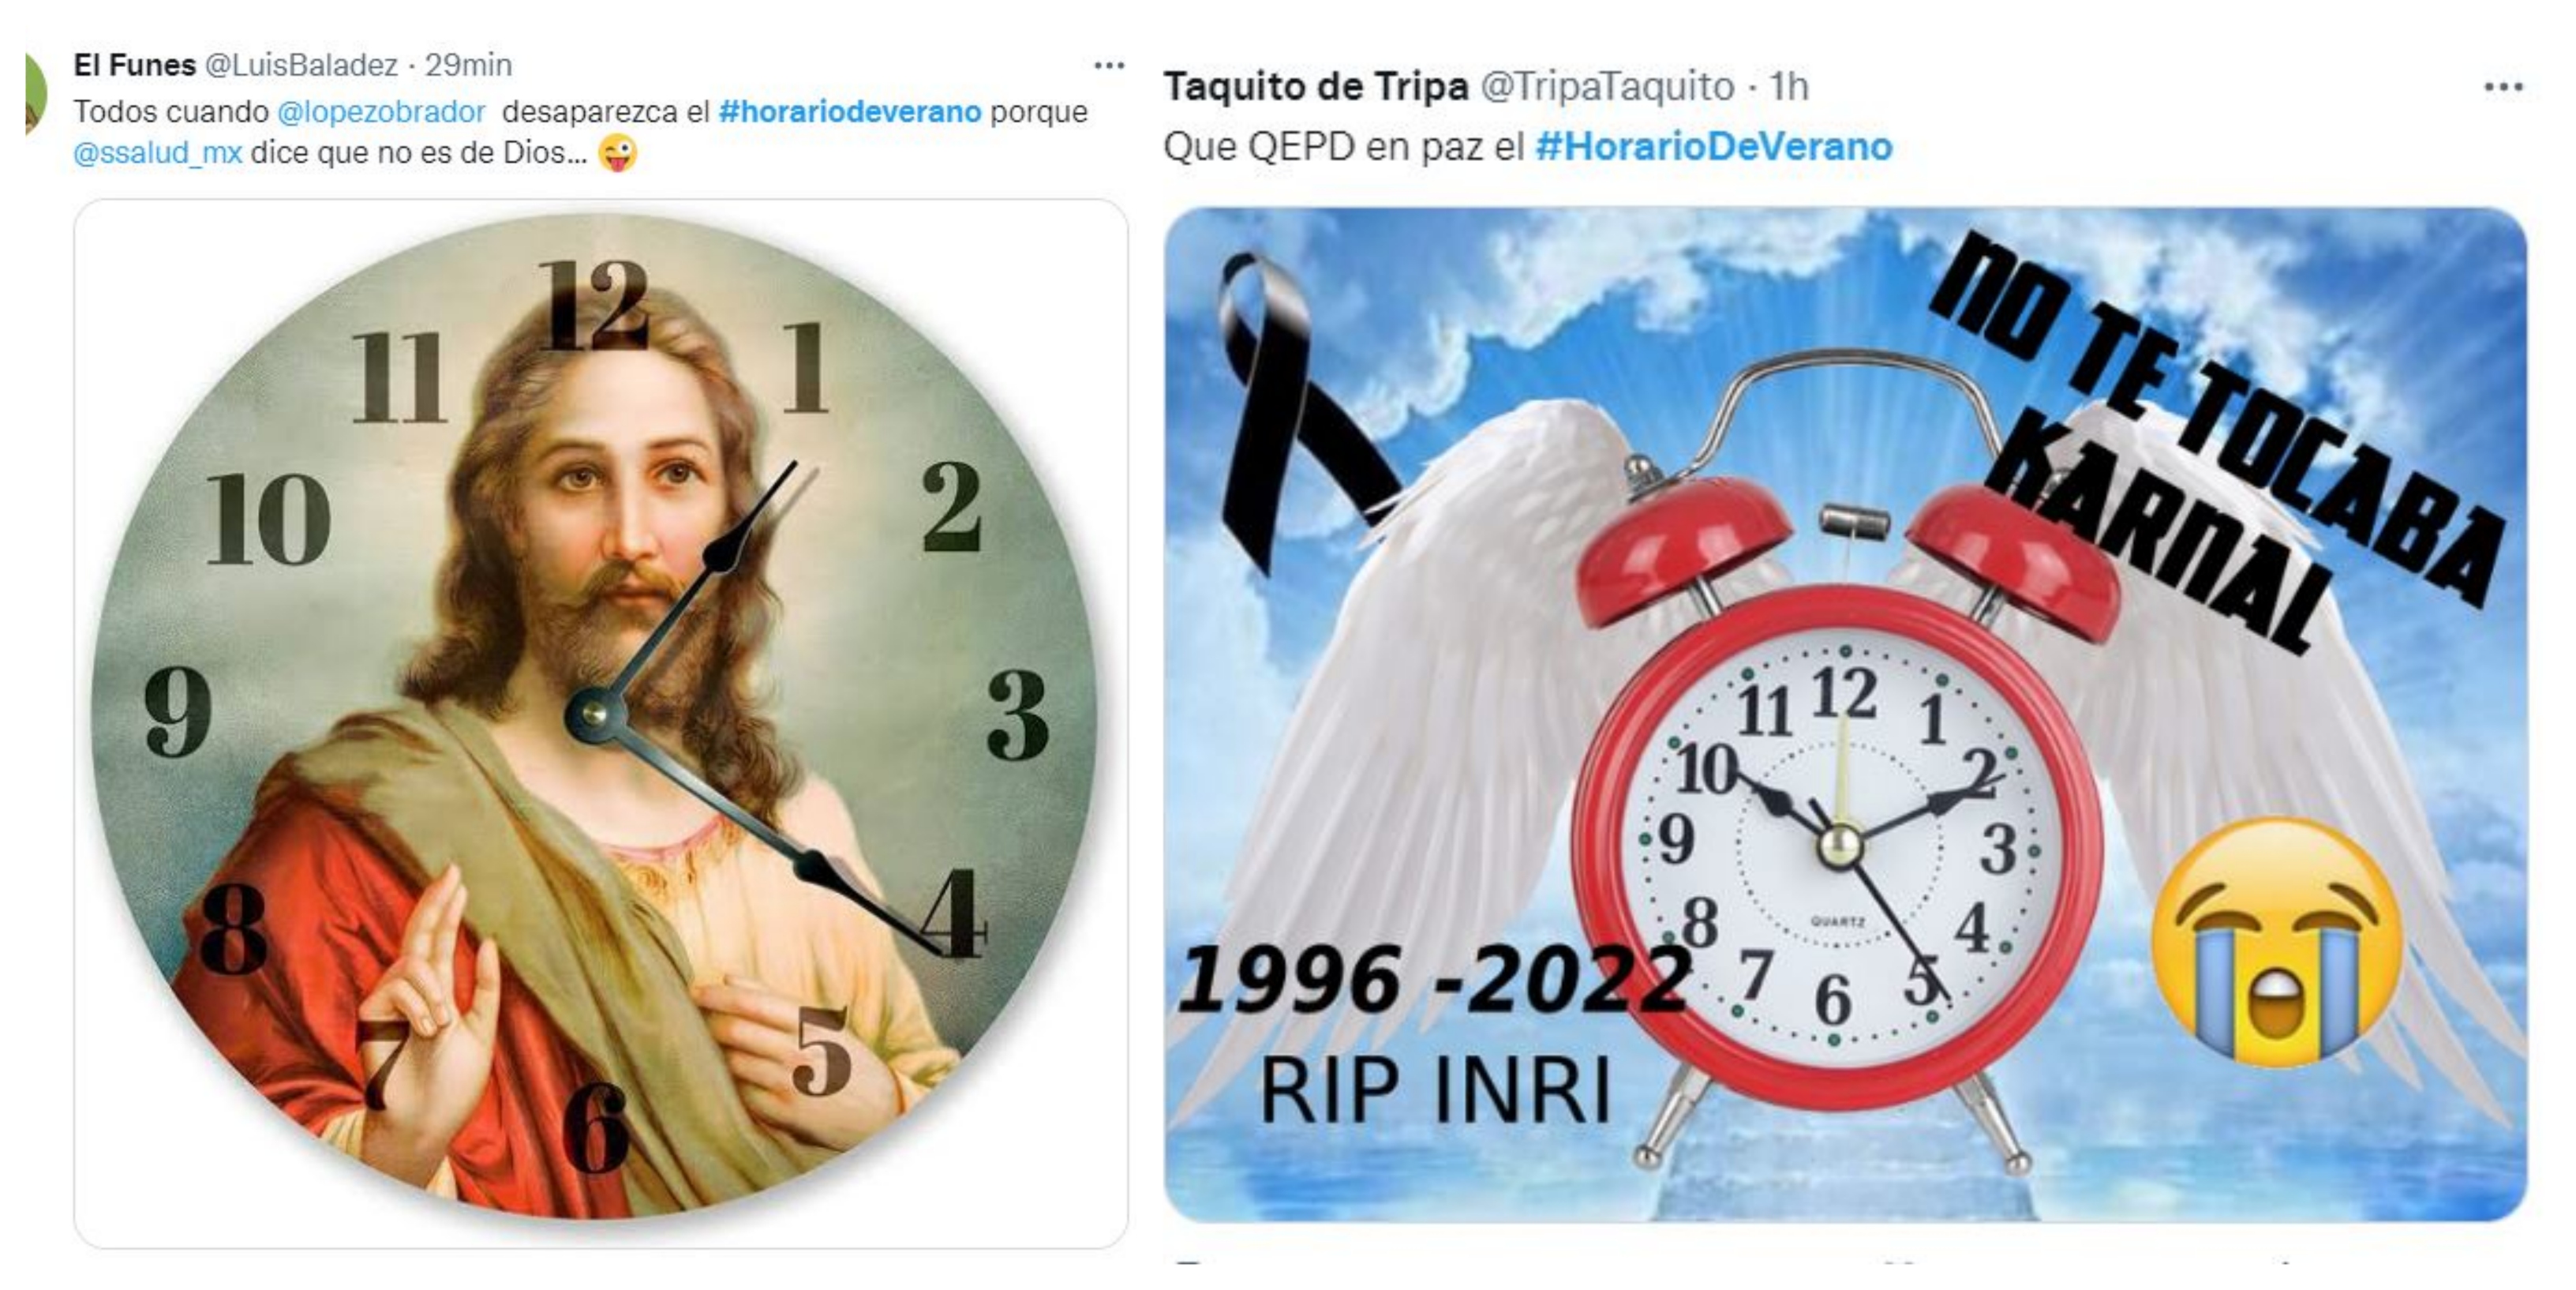 Usuarios en redes sociales reaccionaron con memes a la iniciativa del presidente Andrés Manuel López Obrador para eliminar el horario de verano (Foto: Captura de pantalla Twitter)